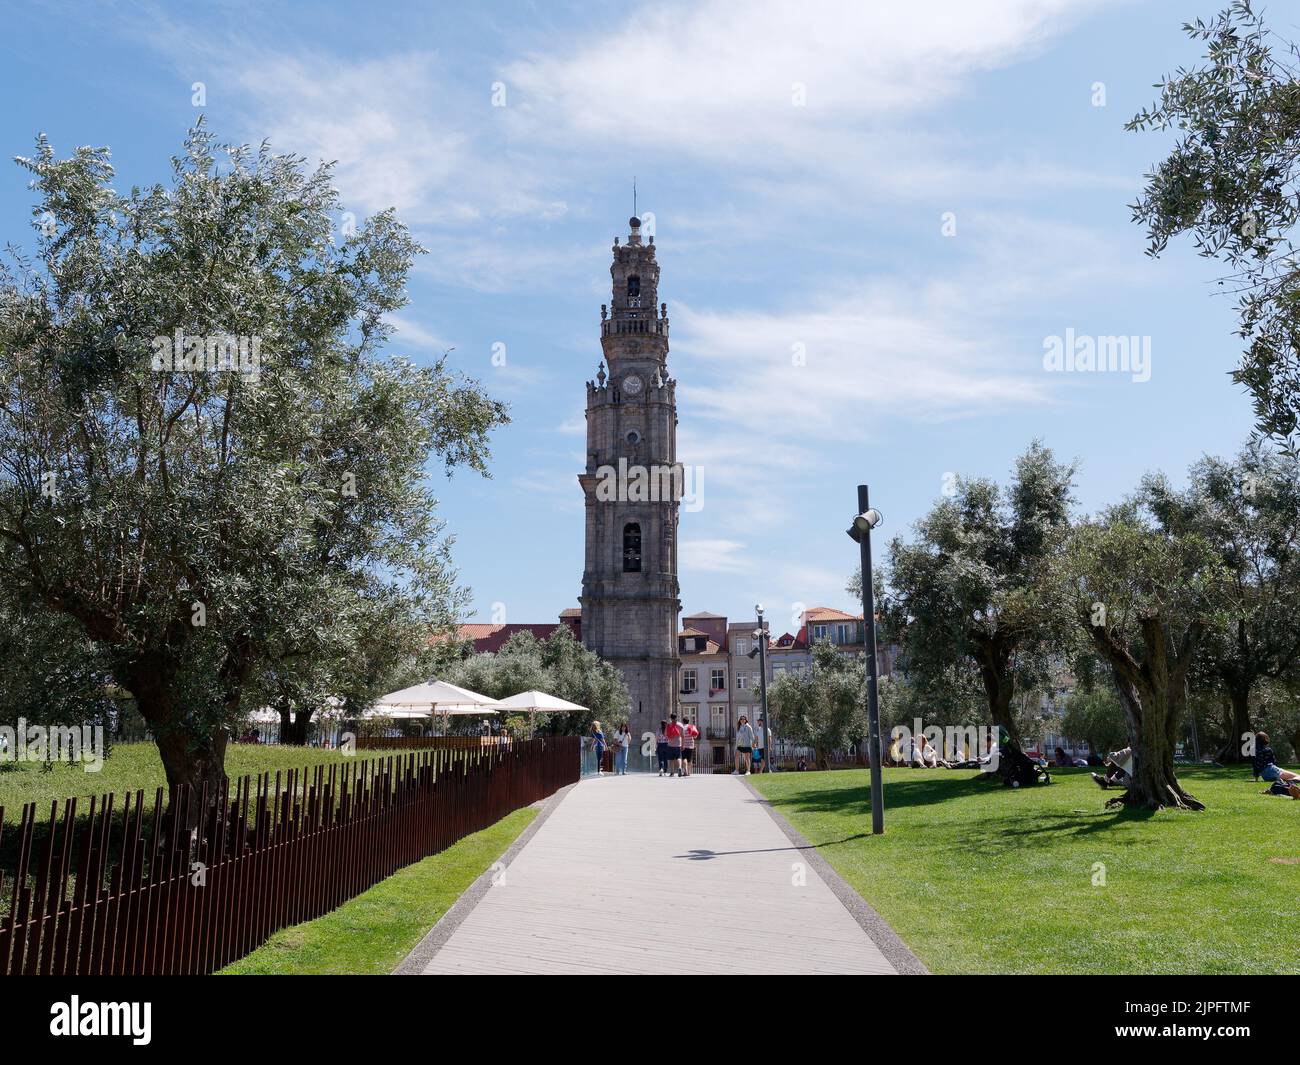 Iglesia de Clérigos, una iglesia barroca en la ciudad de Oporto, Portugal. En el primer plano los turistas caminan y se sientan en una zona de parque llena de olivos. Foto de stock